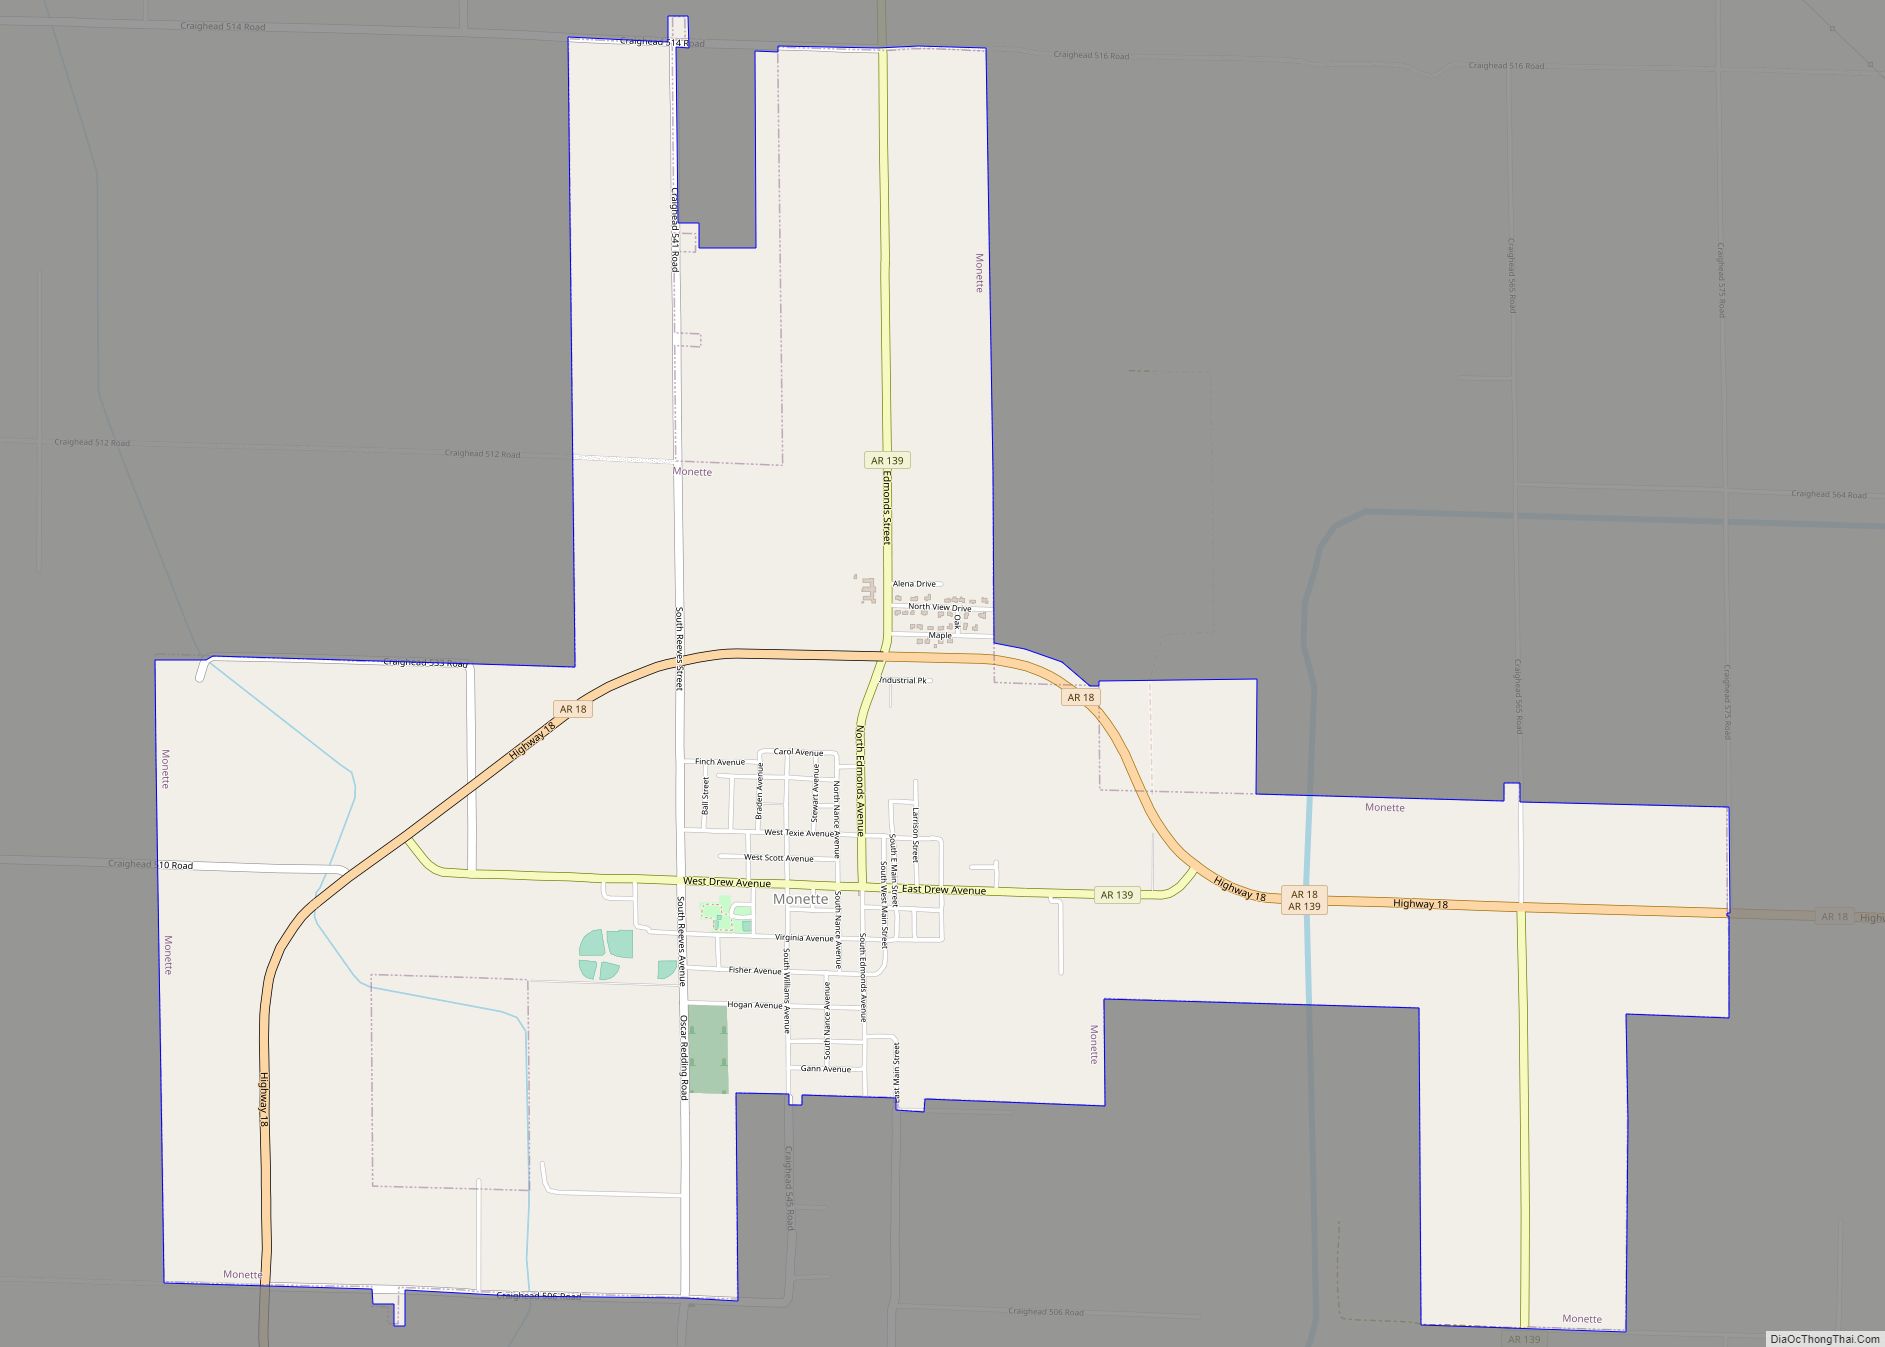 Map of Monette city